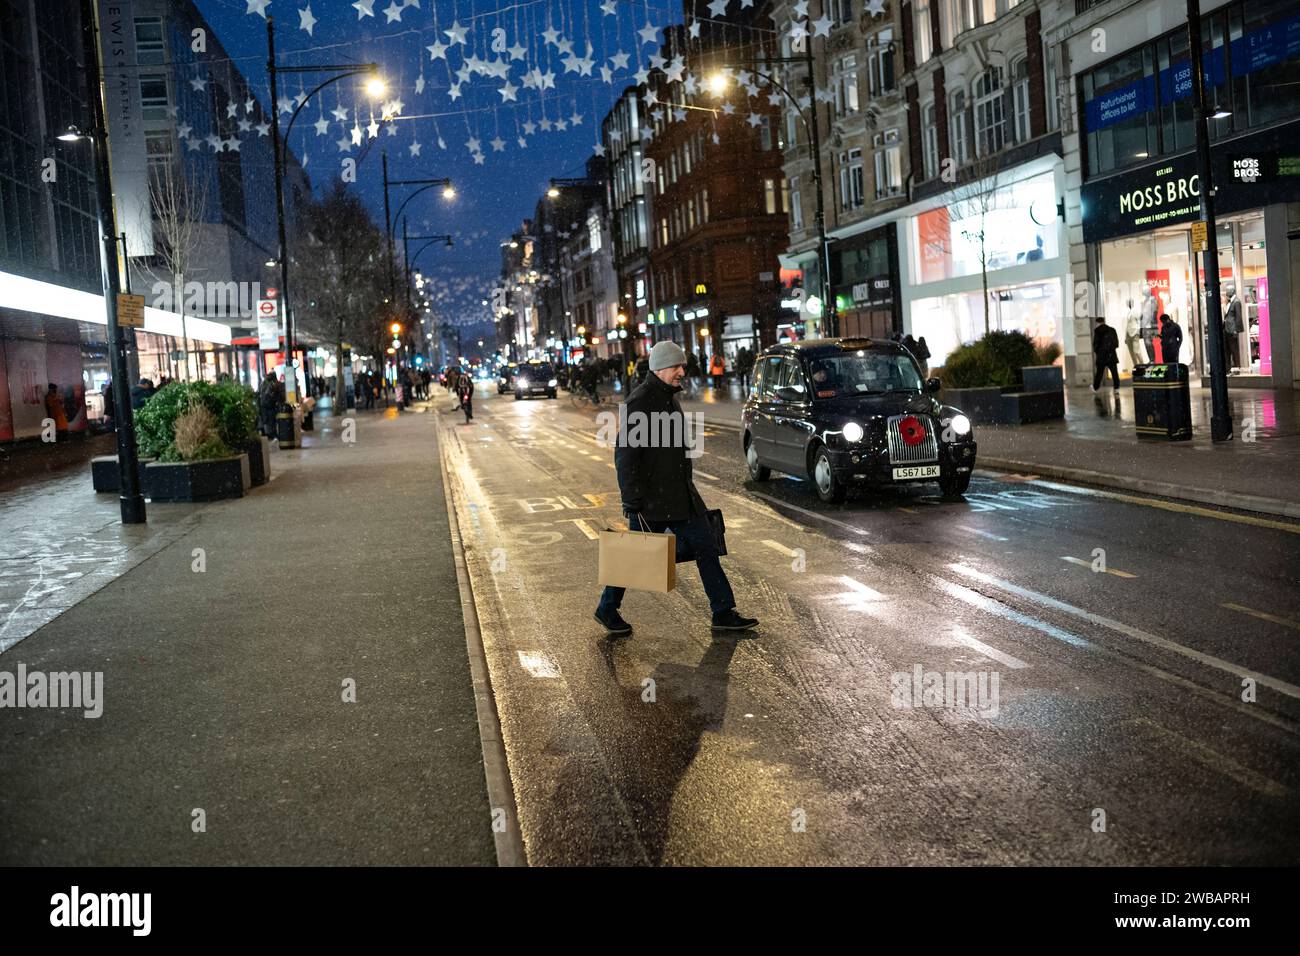 Käufer trotzen dem kalten Winter bei eisigen Schneeregen und Regenschauern auf der Oxford Street, Londons geschäftigster High Street, England, Großbritannien Stockfoto